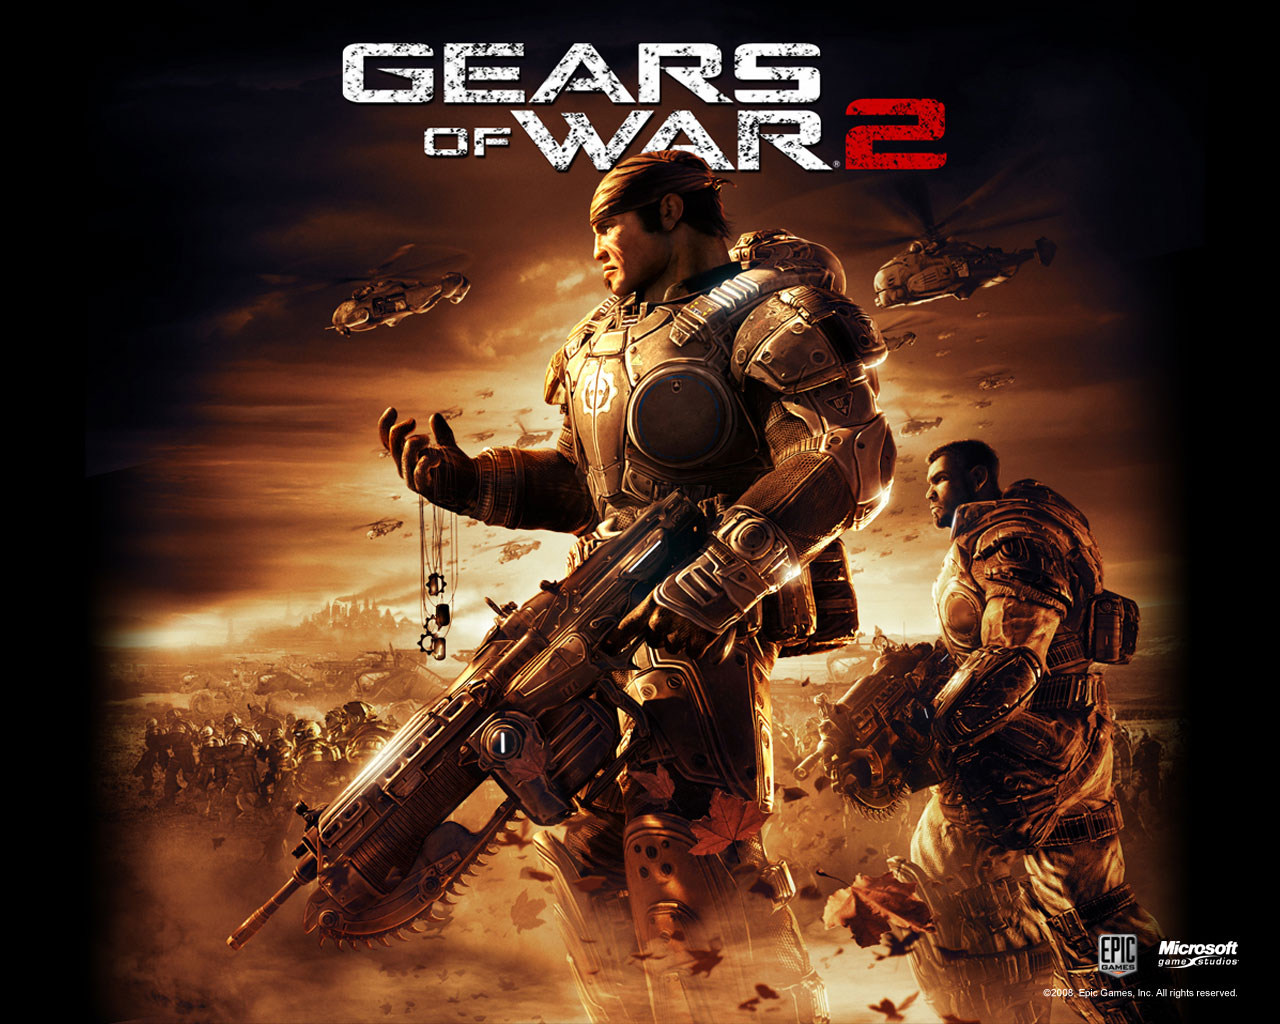 45+] Gears Of War 2 Wallpaper - WallpaperSafari